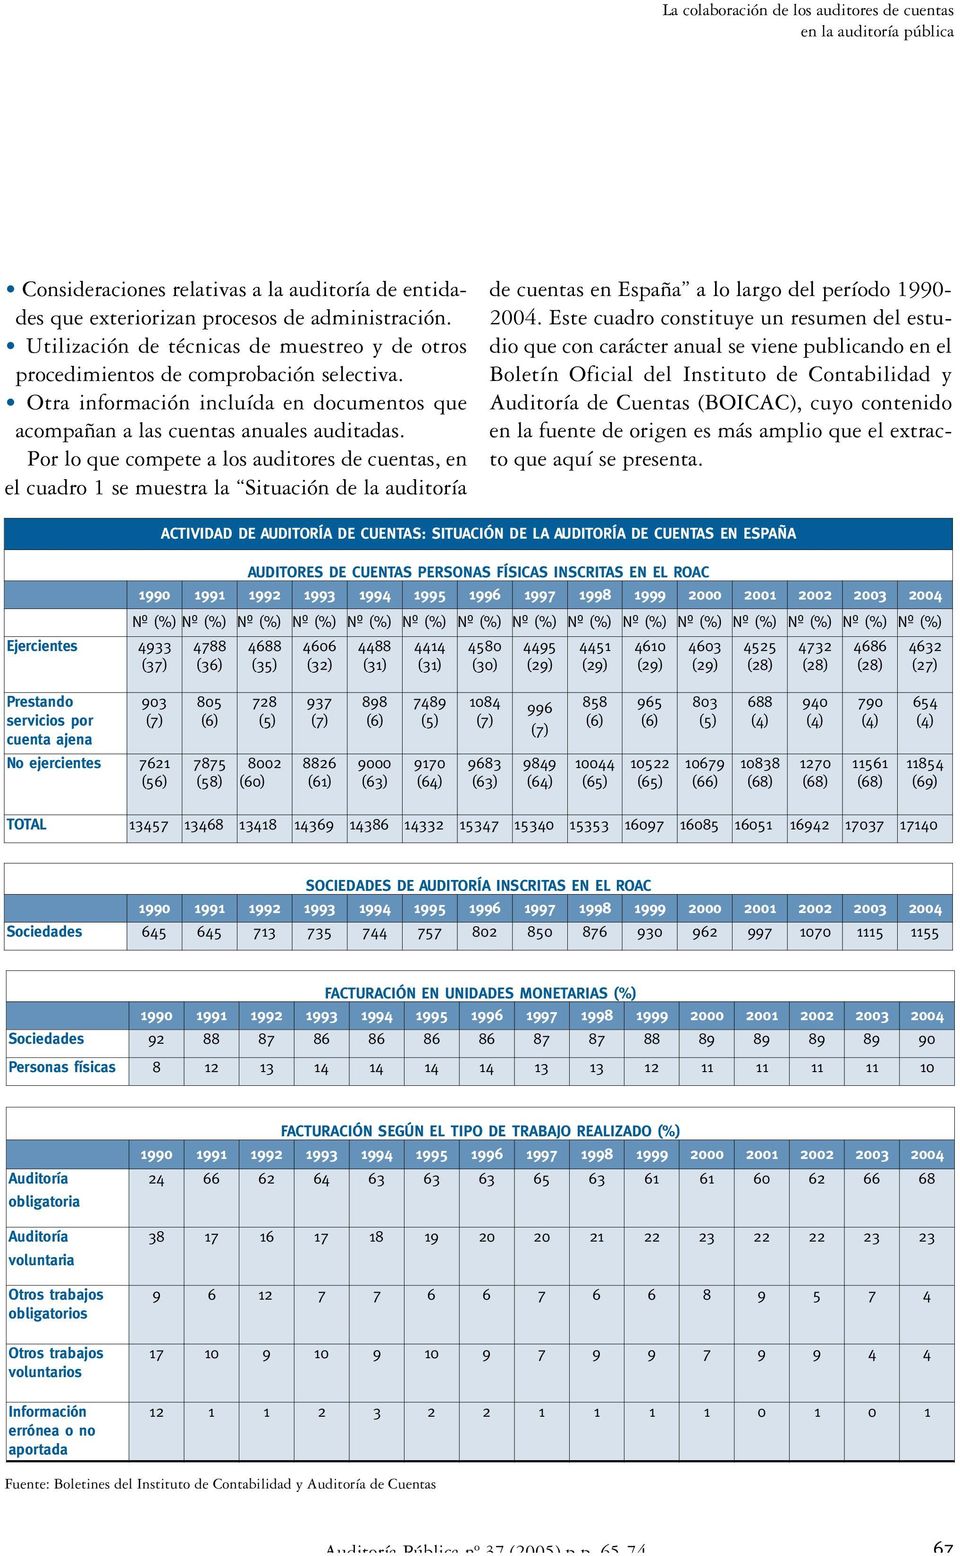 Por lo que compete a los auditores de cuentas, en el cuadro 1 se muestra la Situación de la auditoría de cuentas en España a lo largo del período 1990-2004.